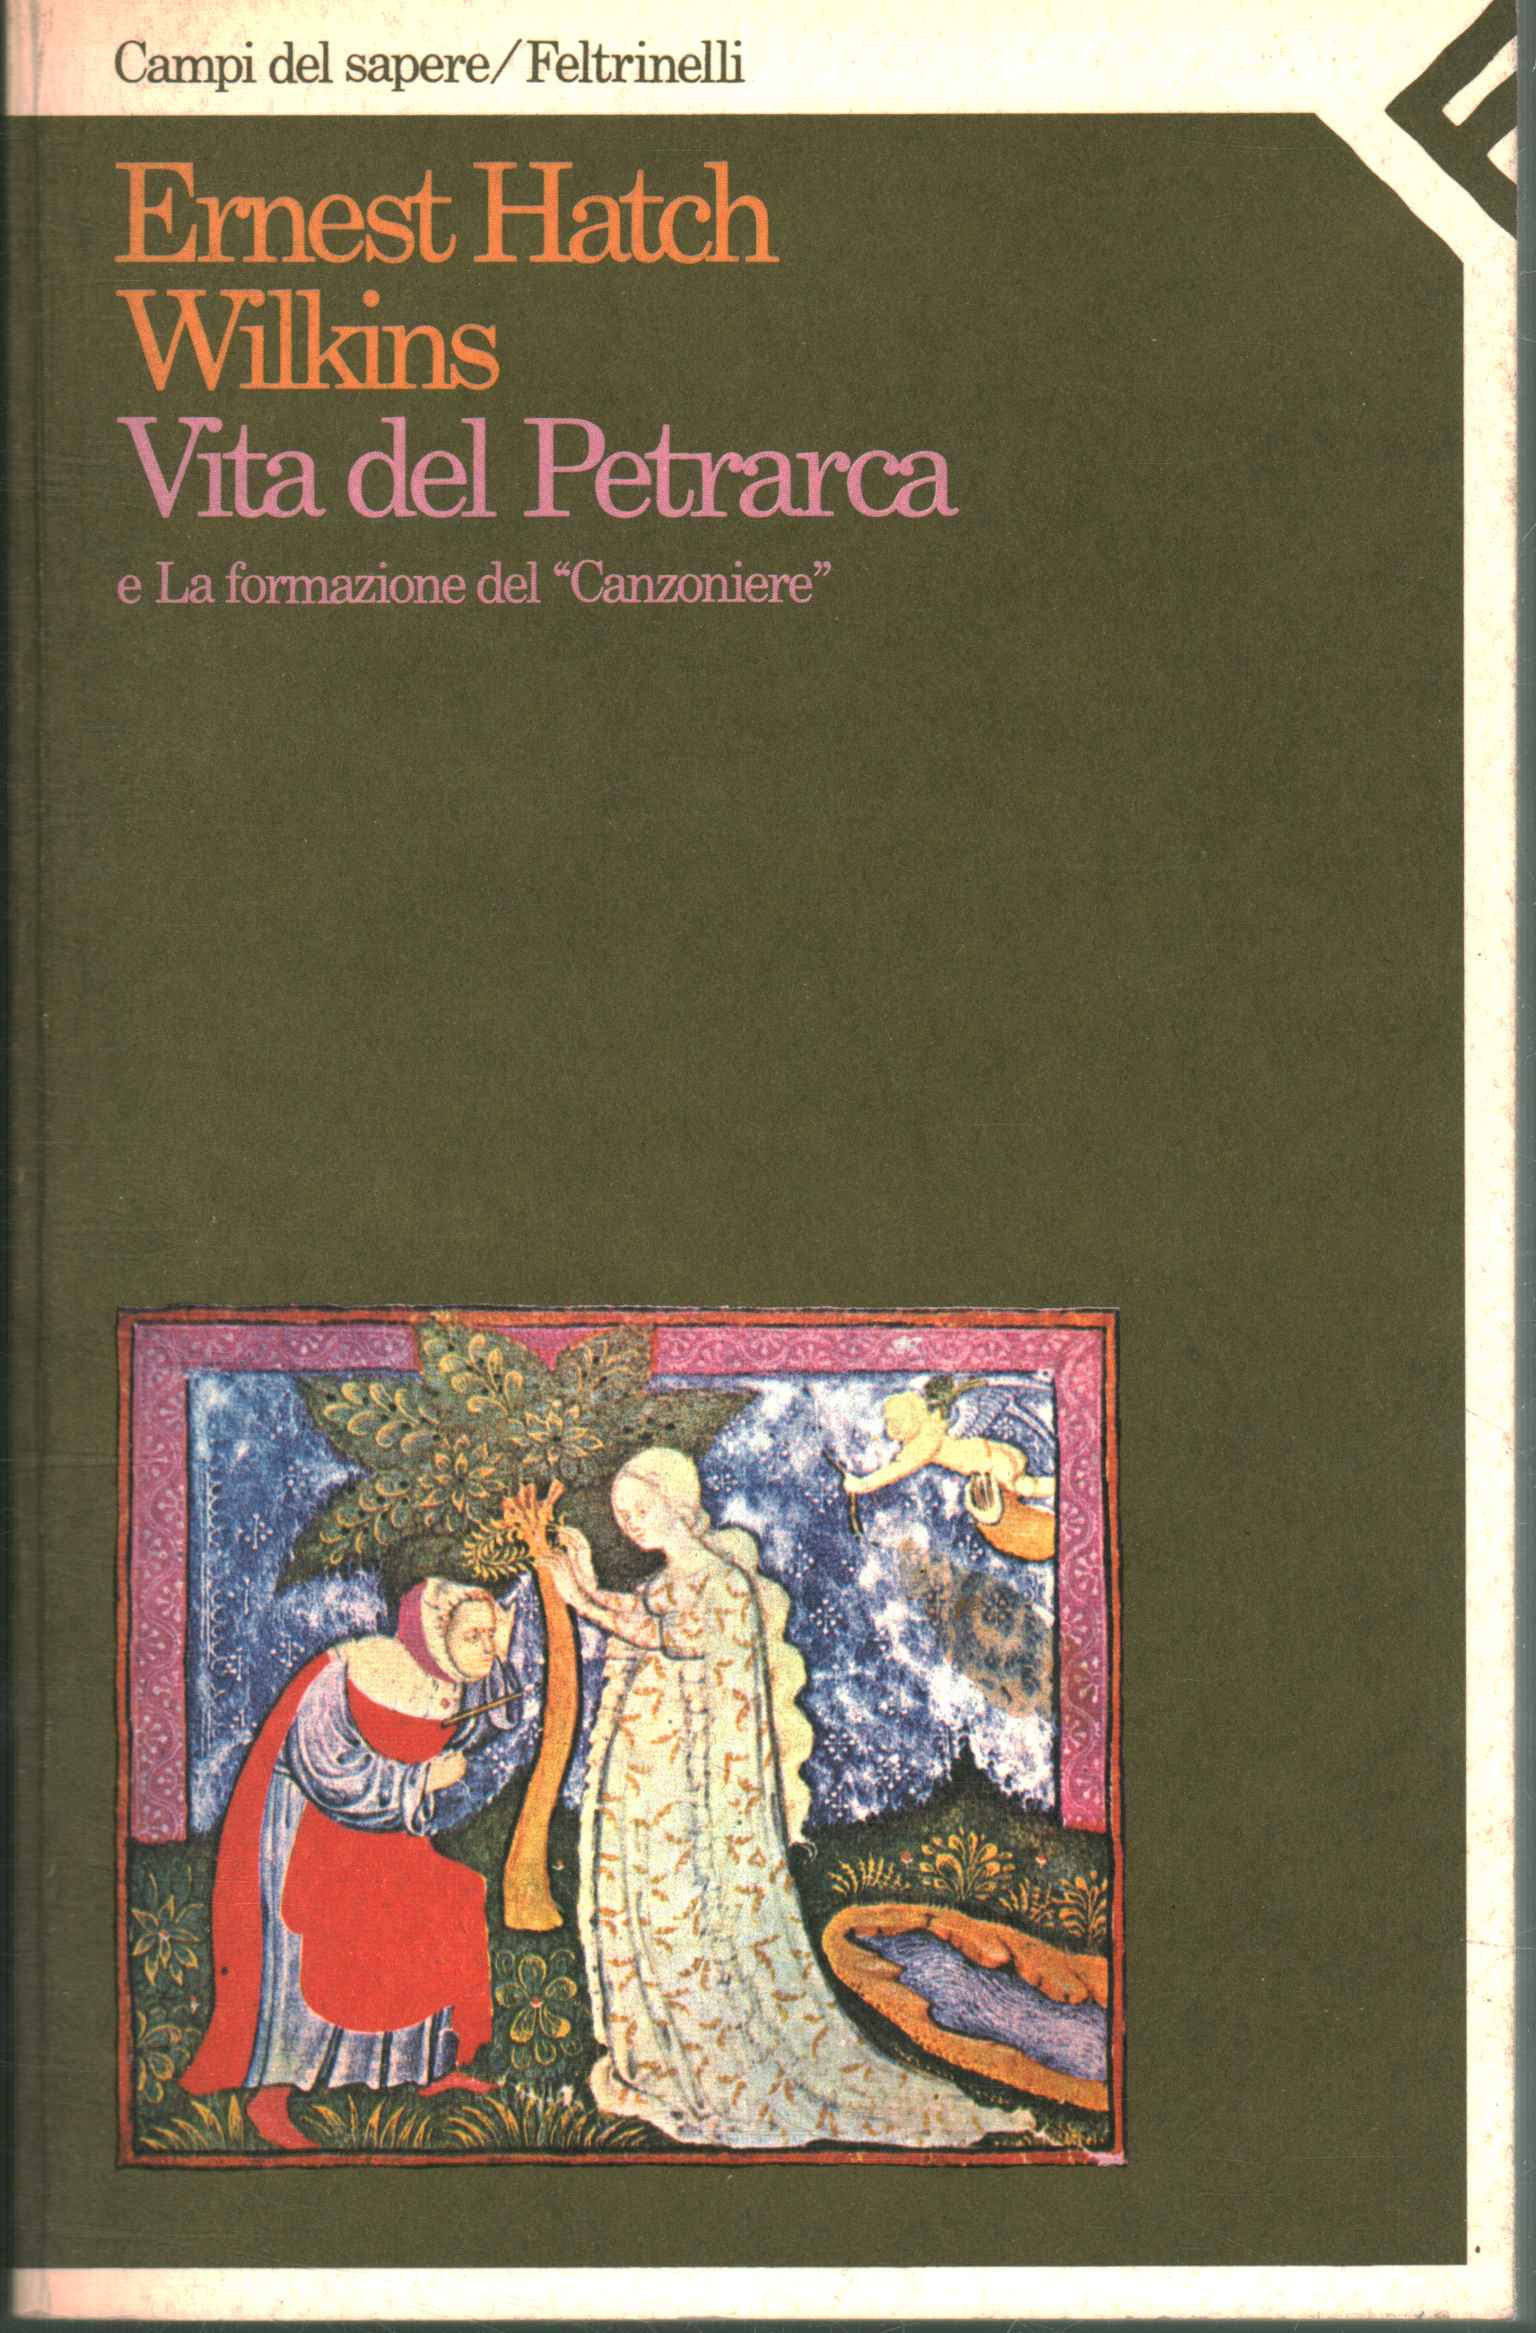 Leben von Petrarca